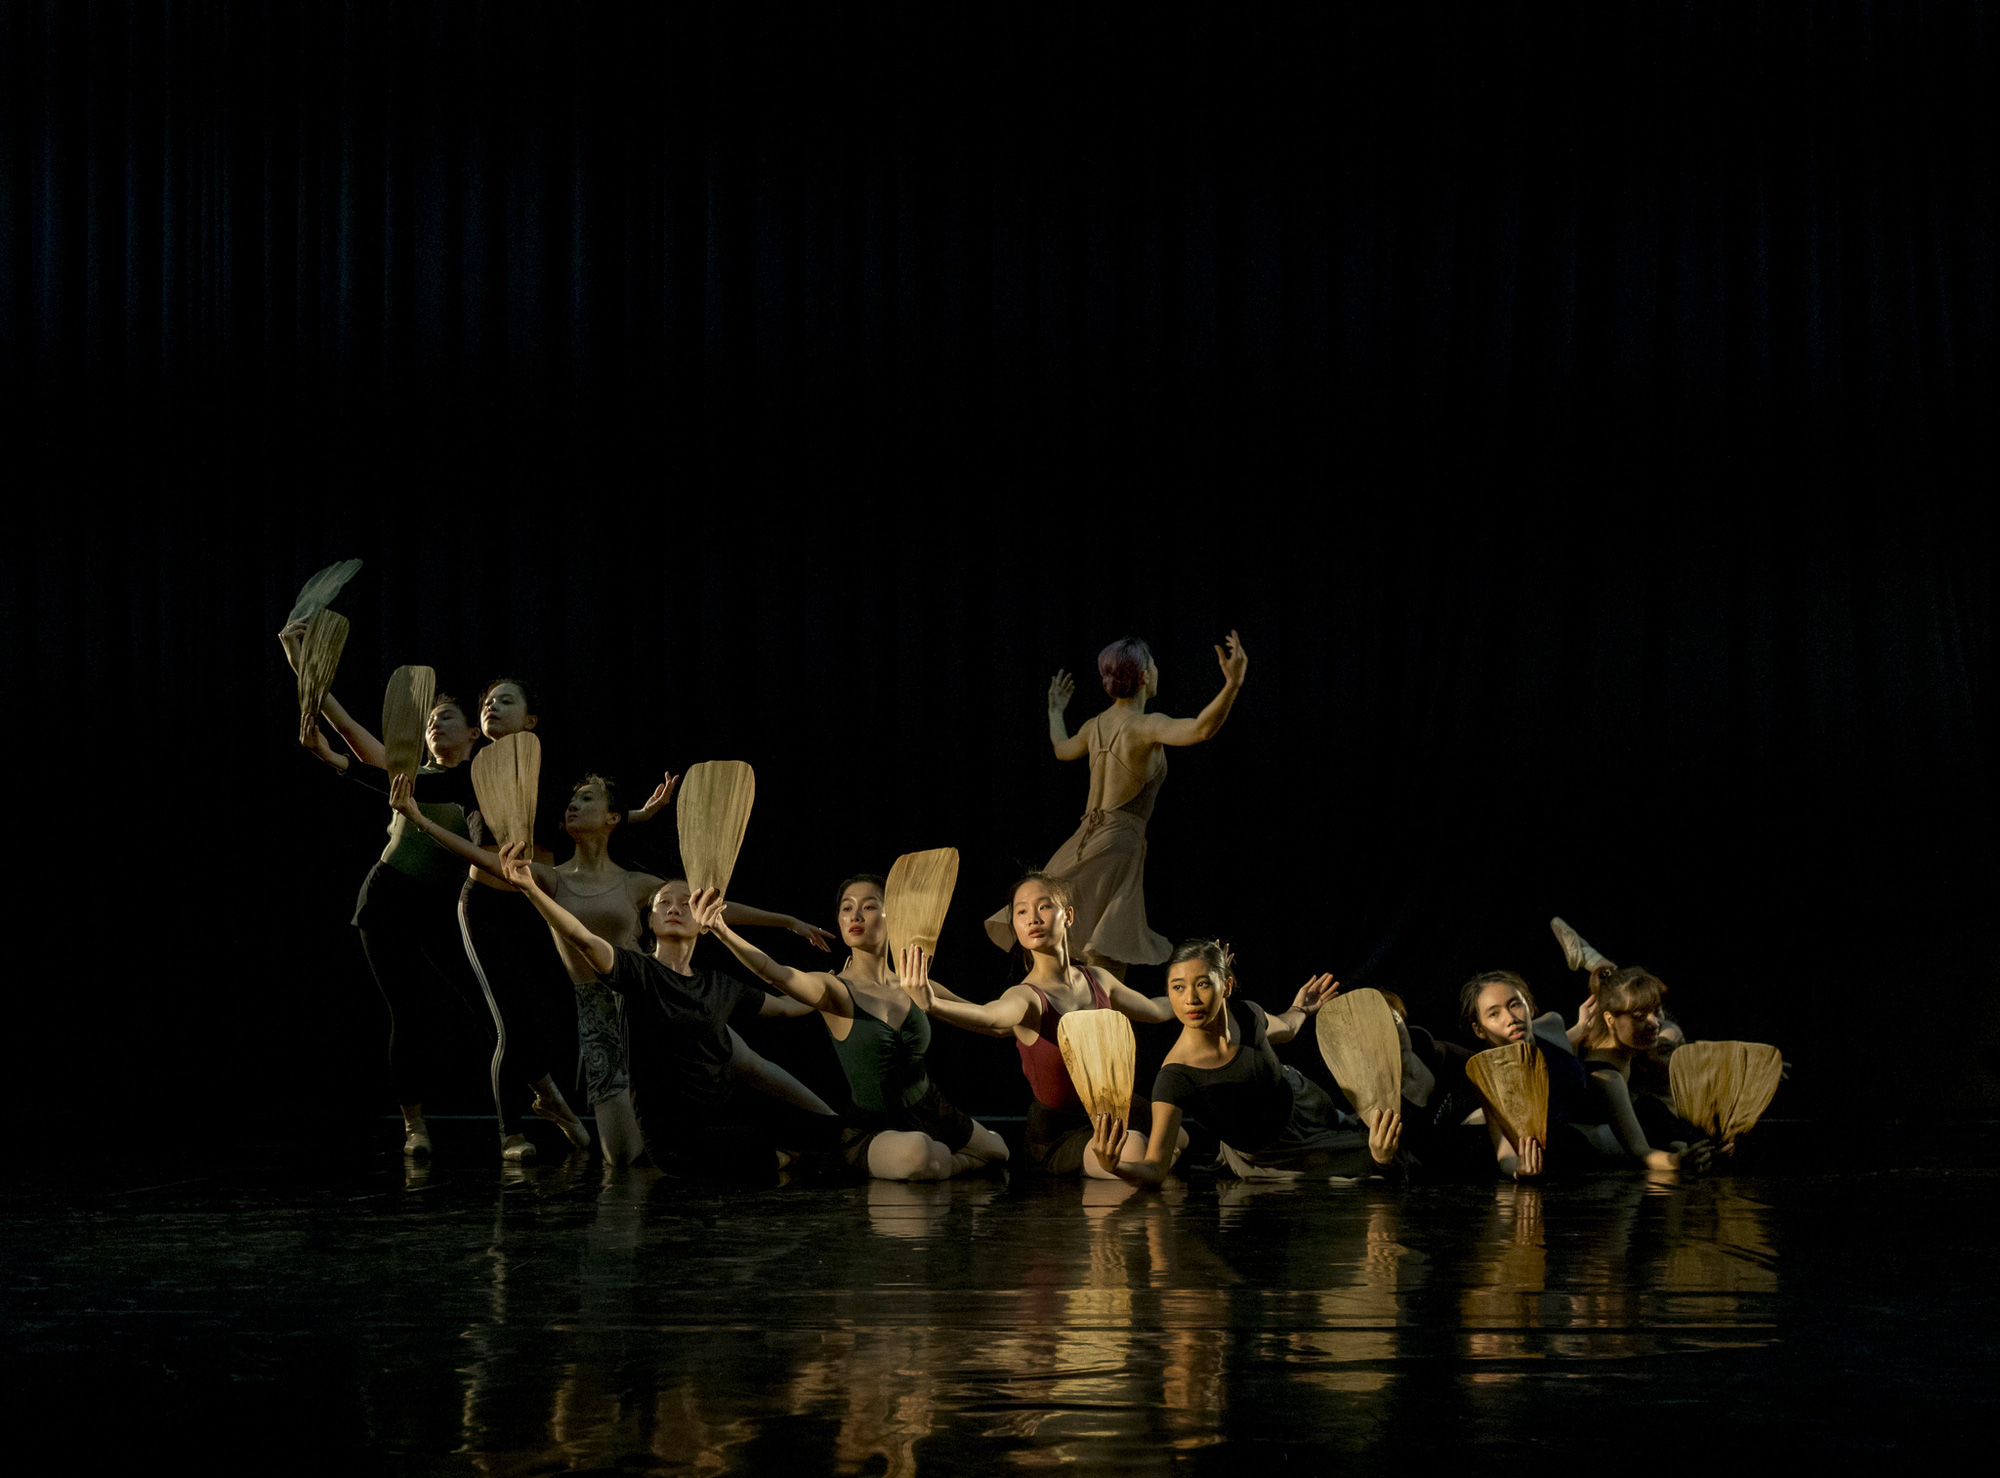 Lần đầu tiên Truyện Kiều được thể hiện bằng nghệ thuật ballet